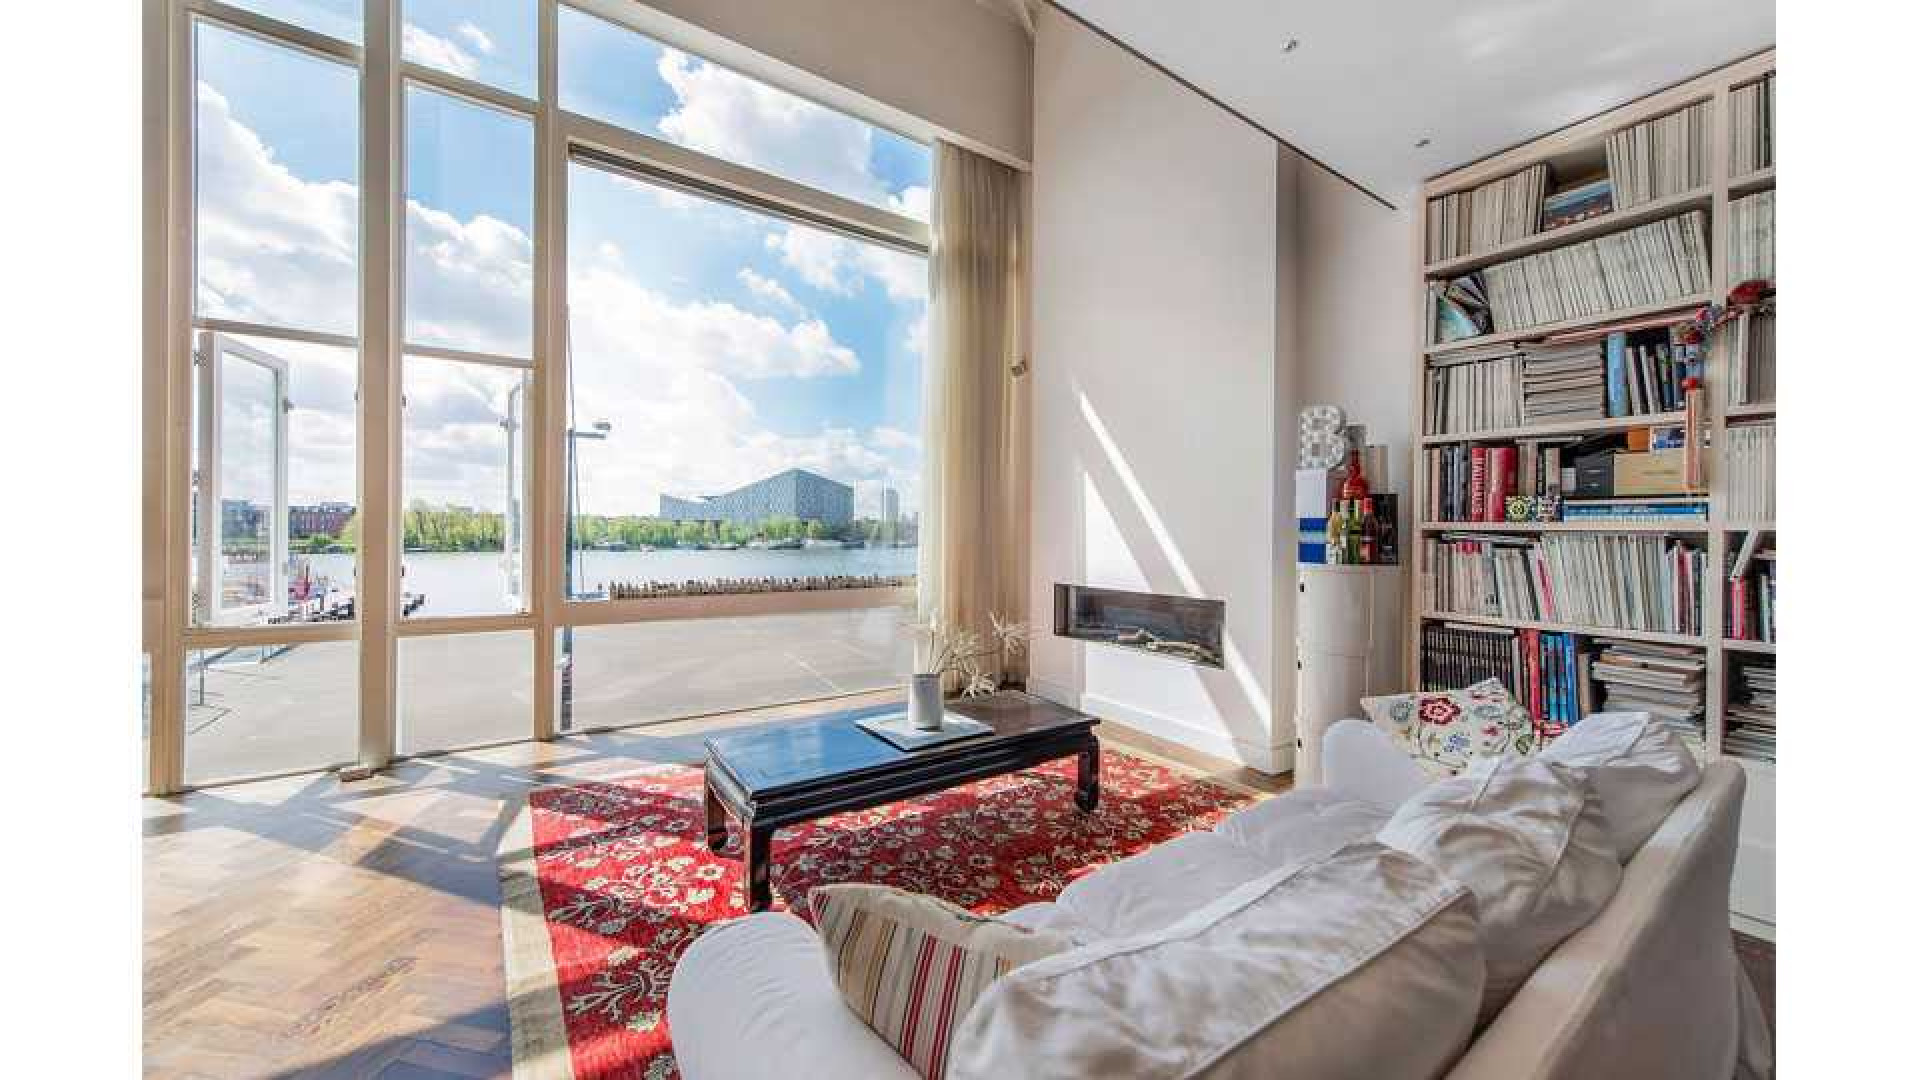 Deze bekende nederlander heeft al zeven jaar zijn Amsterdamse penthouse te koop staan. Zie foto's penthouse 2